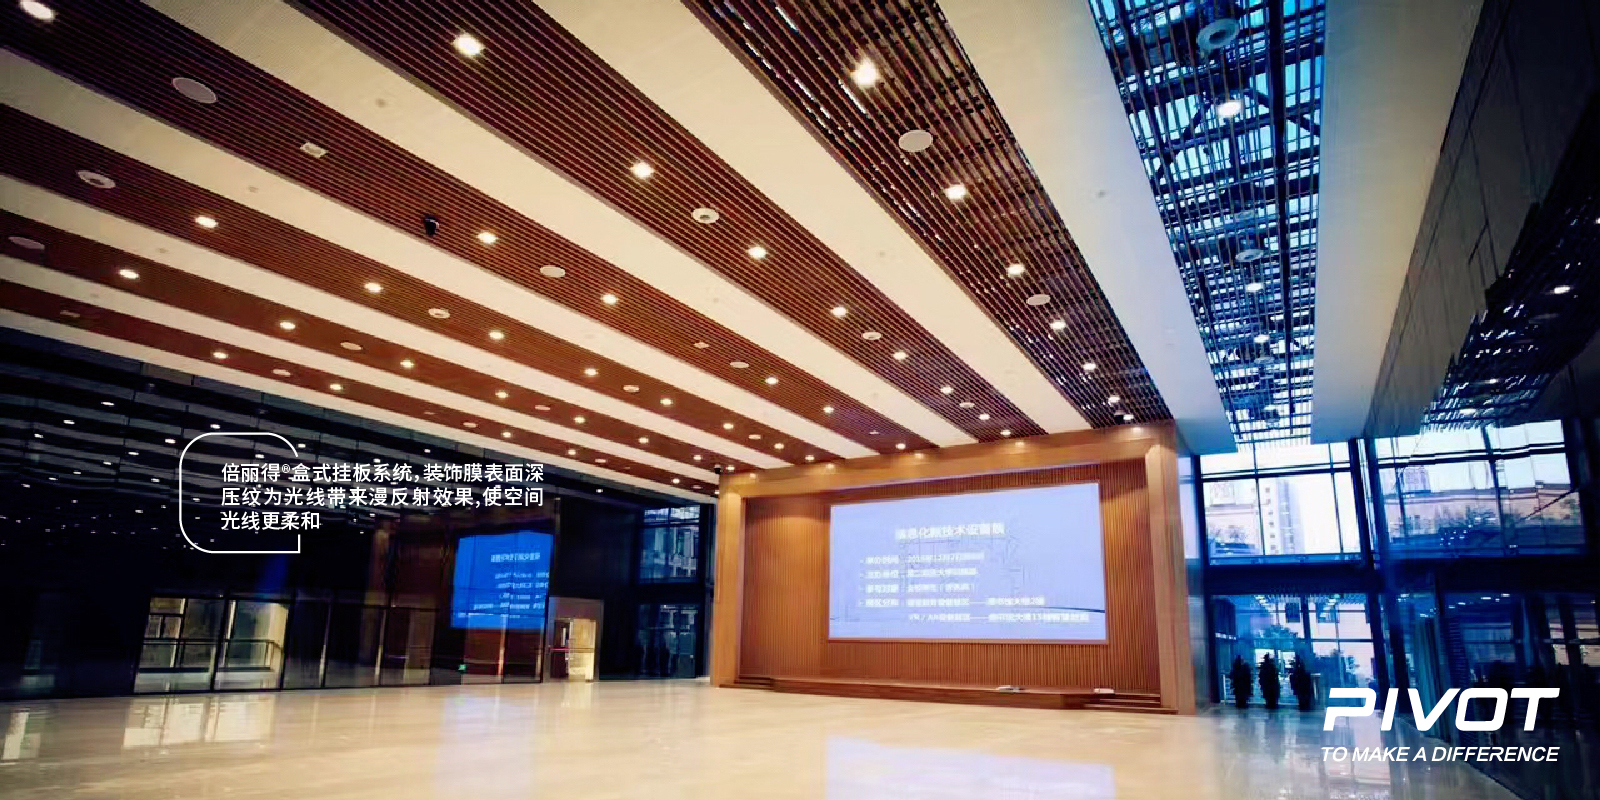 2017-上海-上海第二军医大学图书馆-07.jpg